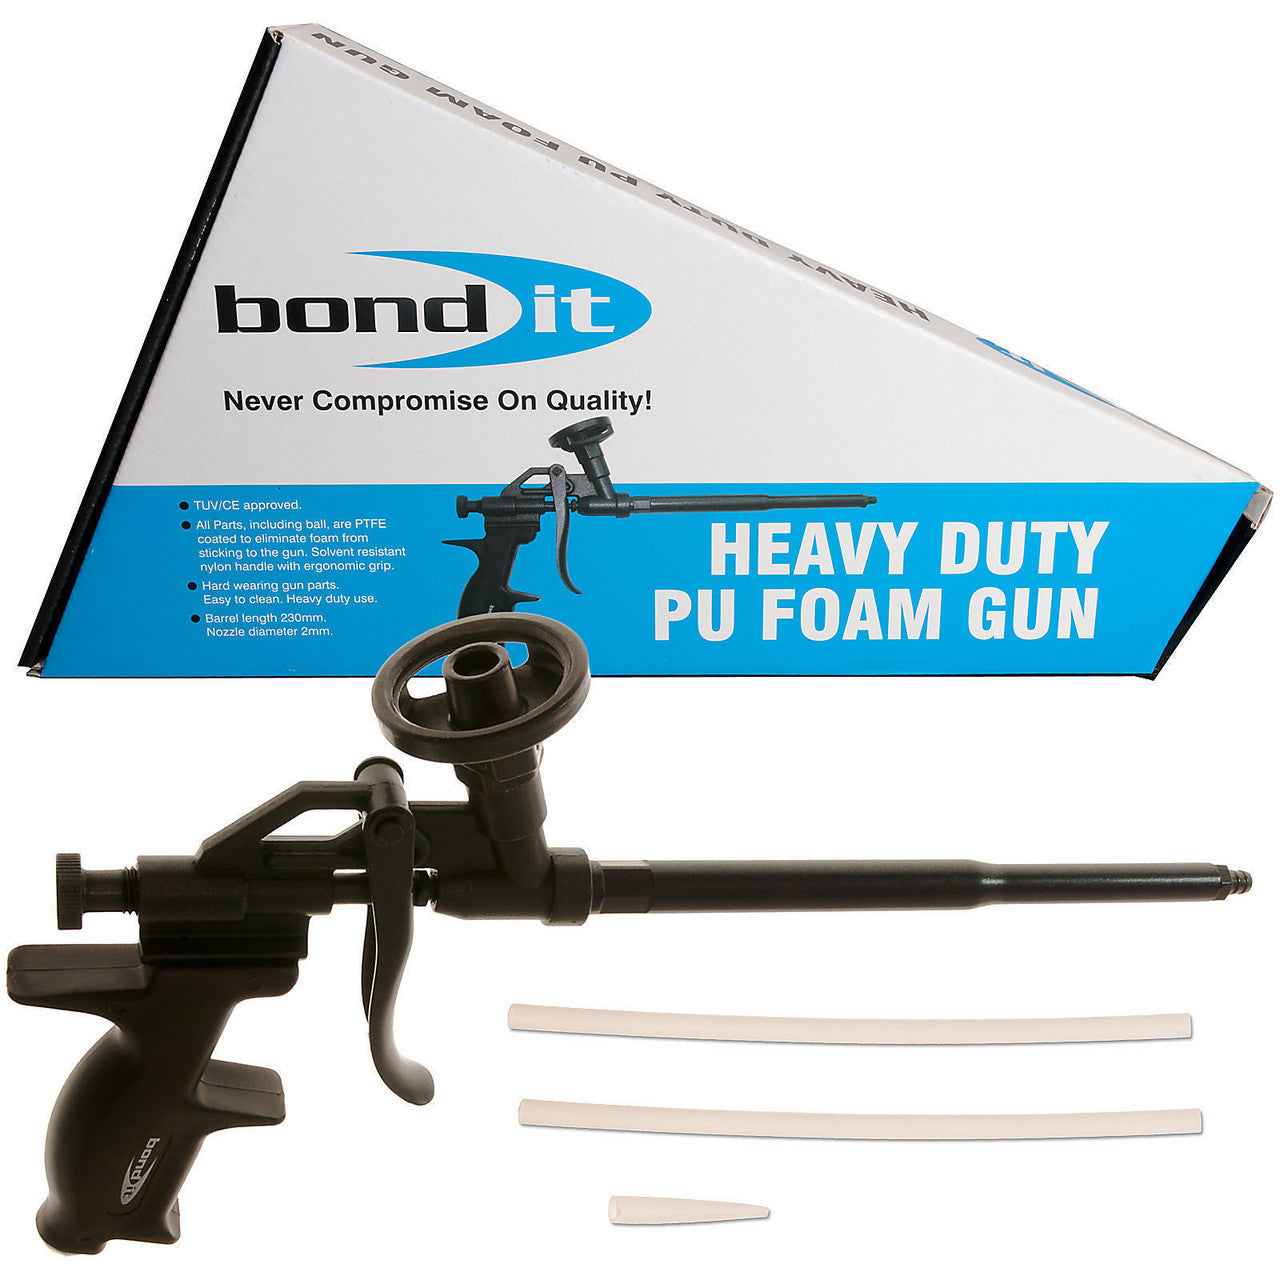 Bond-it Heavy Duty Foam Applicator Gun